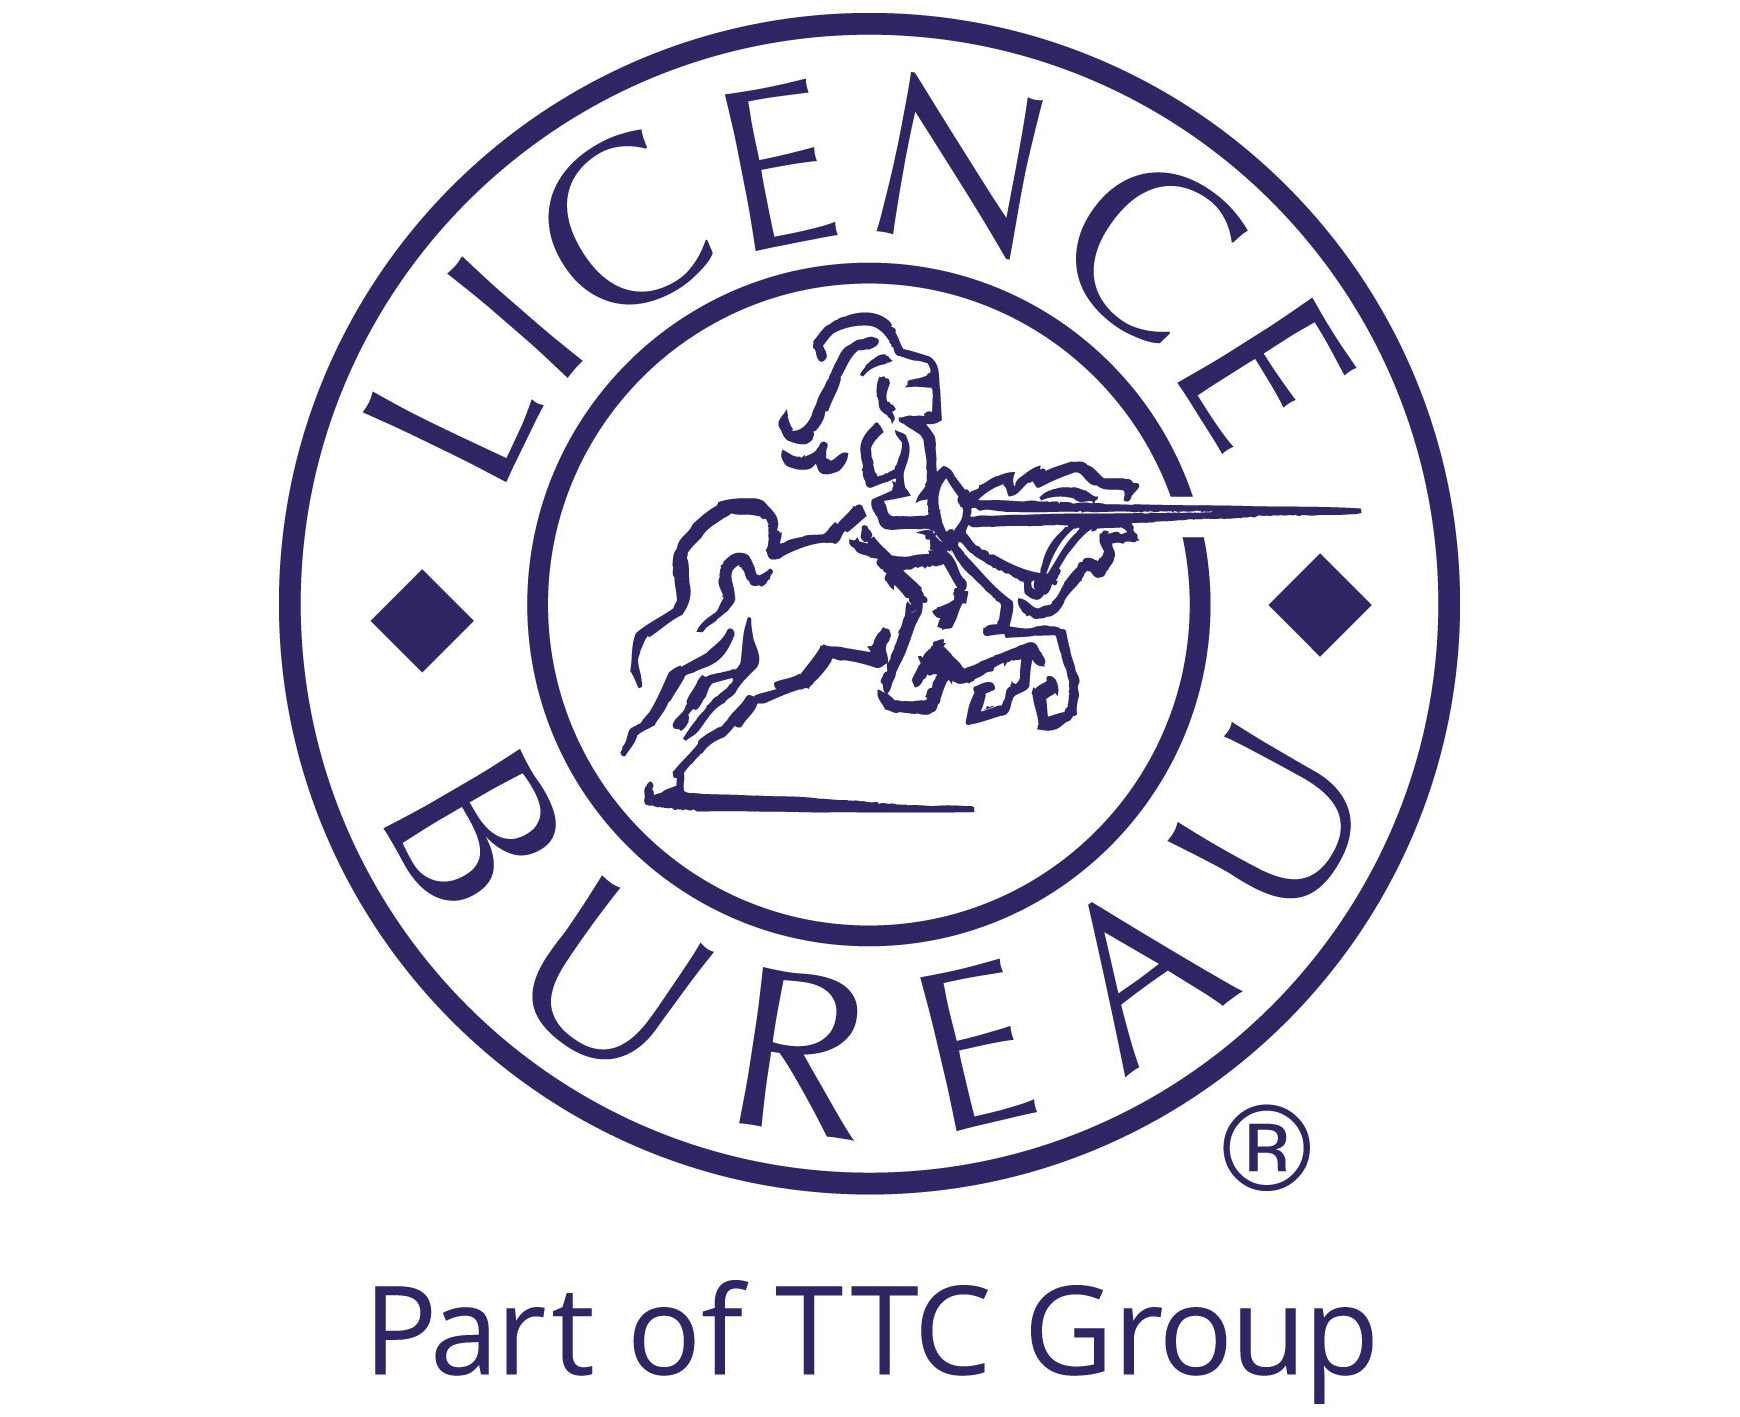 Licence Bureau Ltd